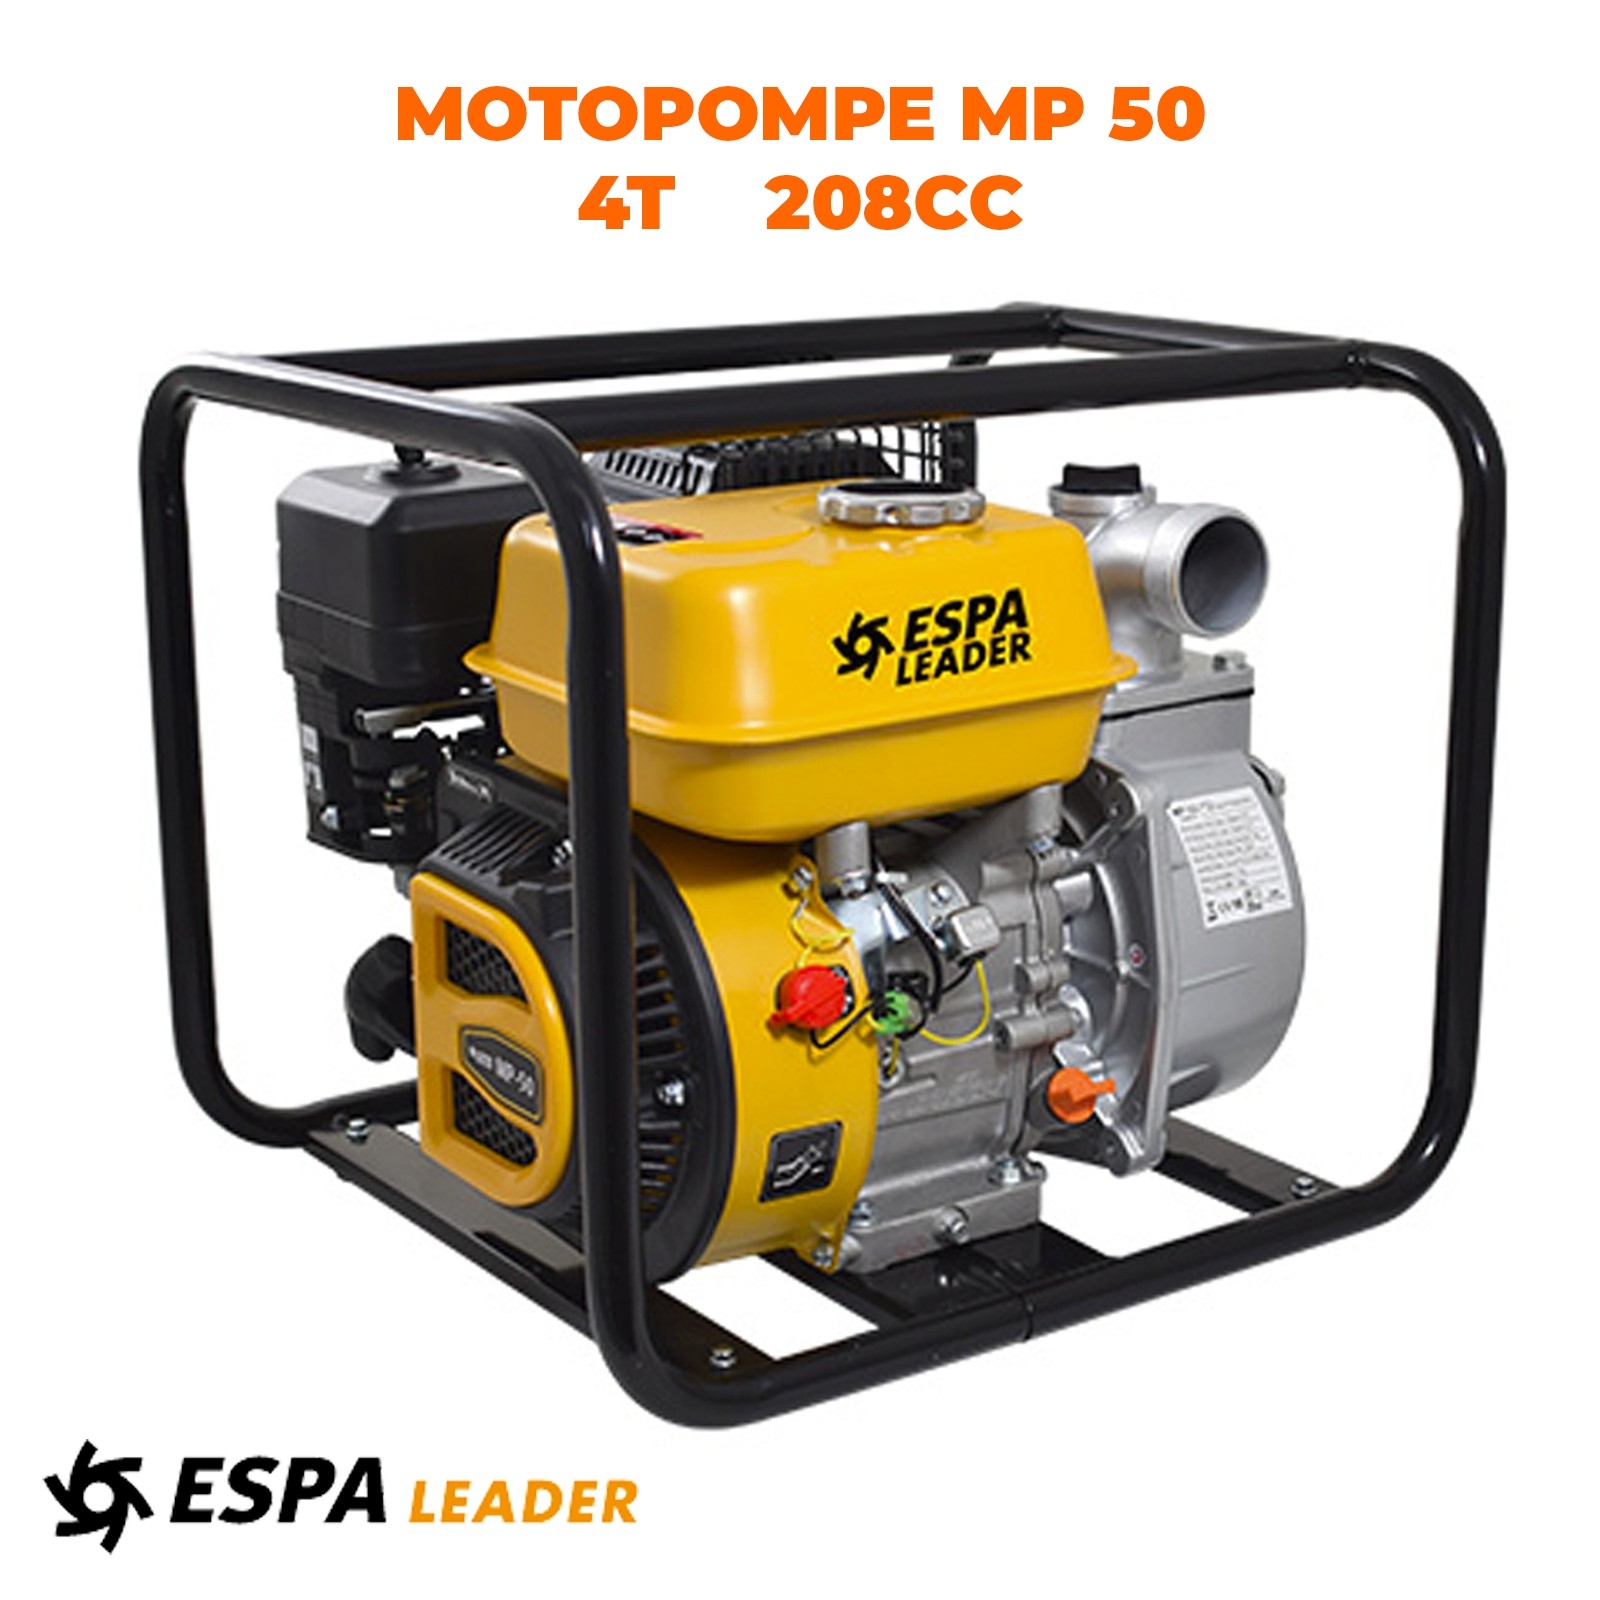 ESPA LEADER MOTOPOMPE MP-50